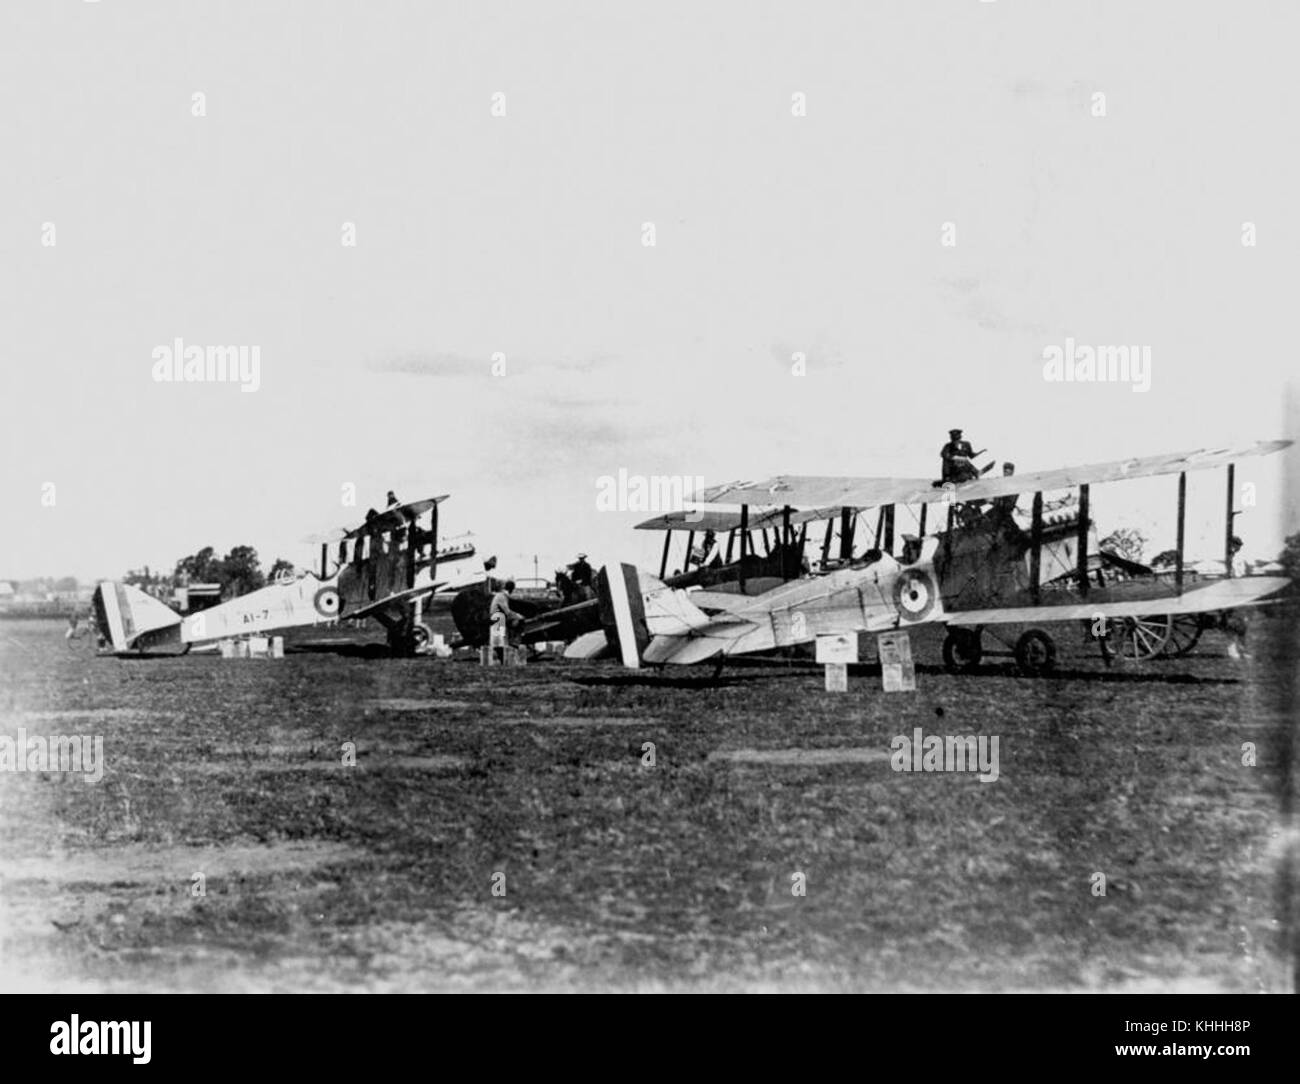 2 189475 Drei Doppeldecker mit der raaf Insignia auf dem Rumpf, Brisbane, 1924 Stockfoto